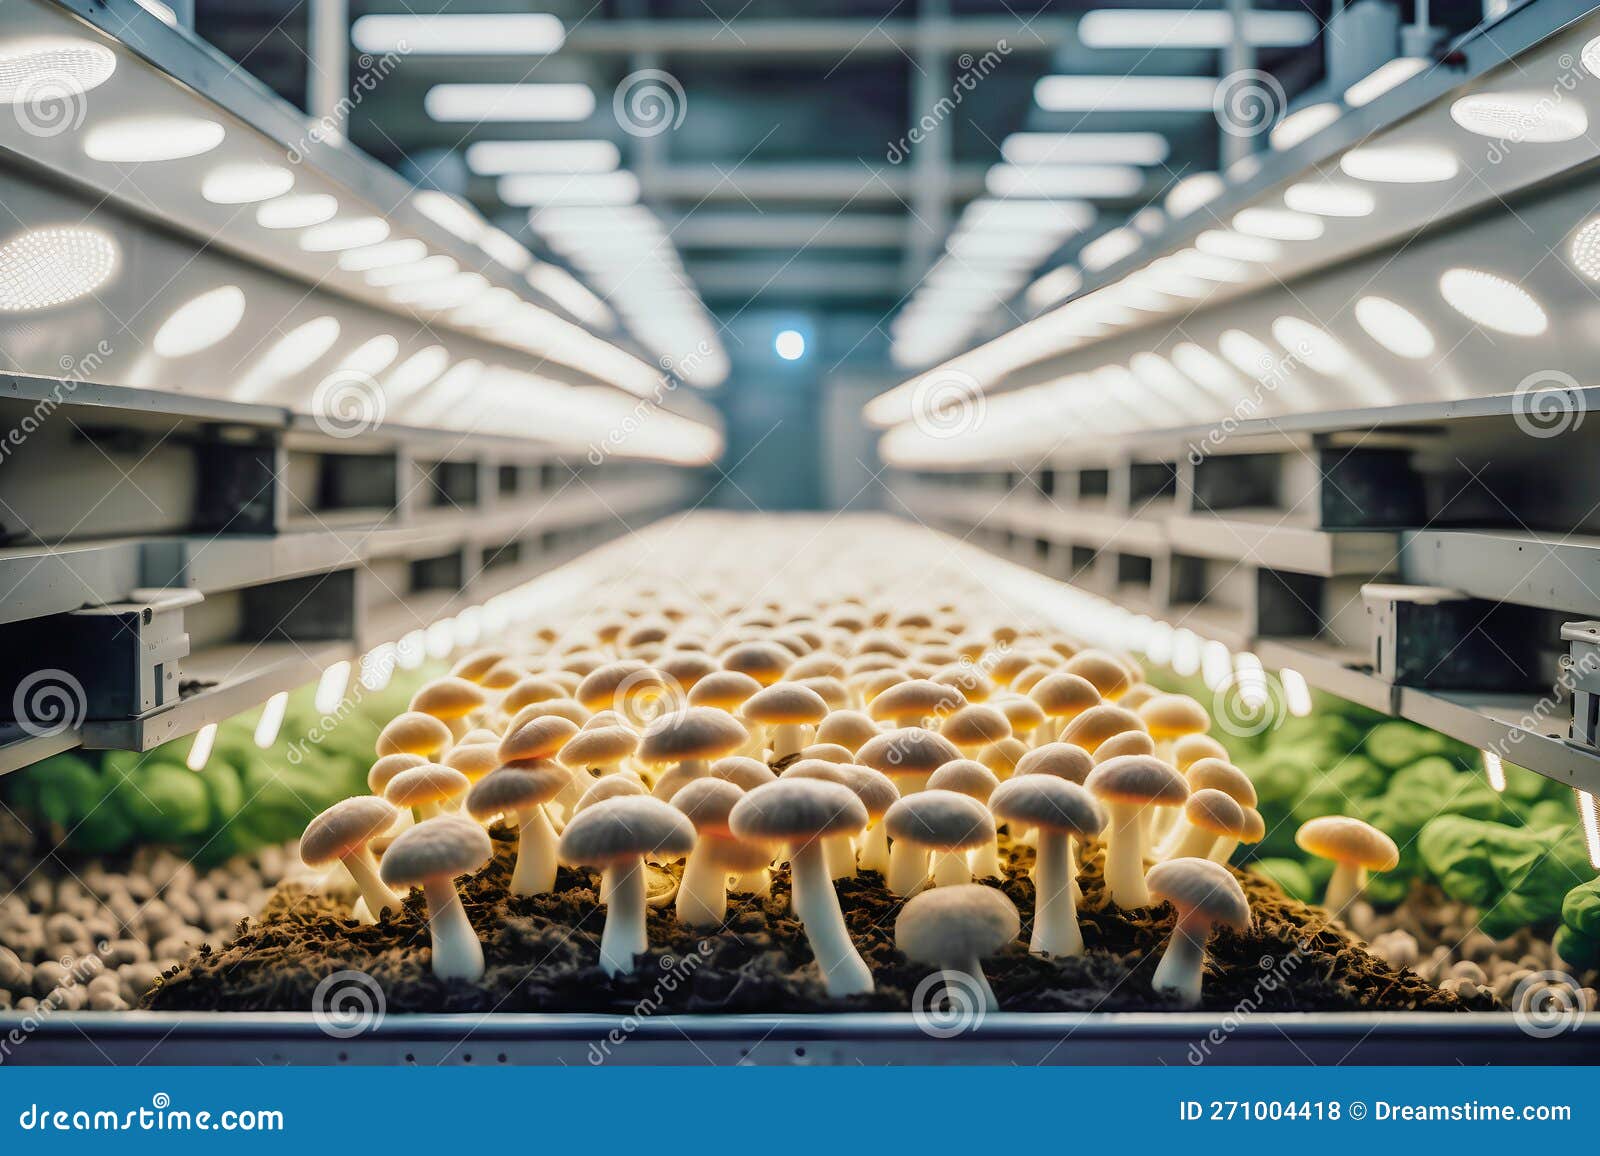 Champignons Biologiques Cultivés Dans Une Ferme De Champignons Moderne  Photo stock - Image du industriel, ferme: 271004418